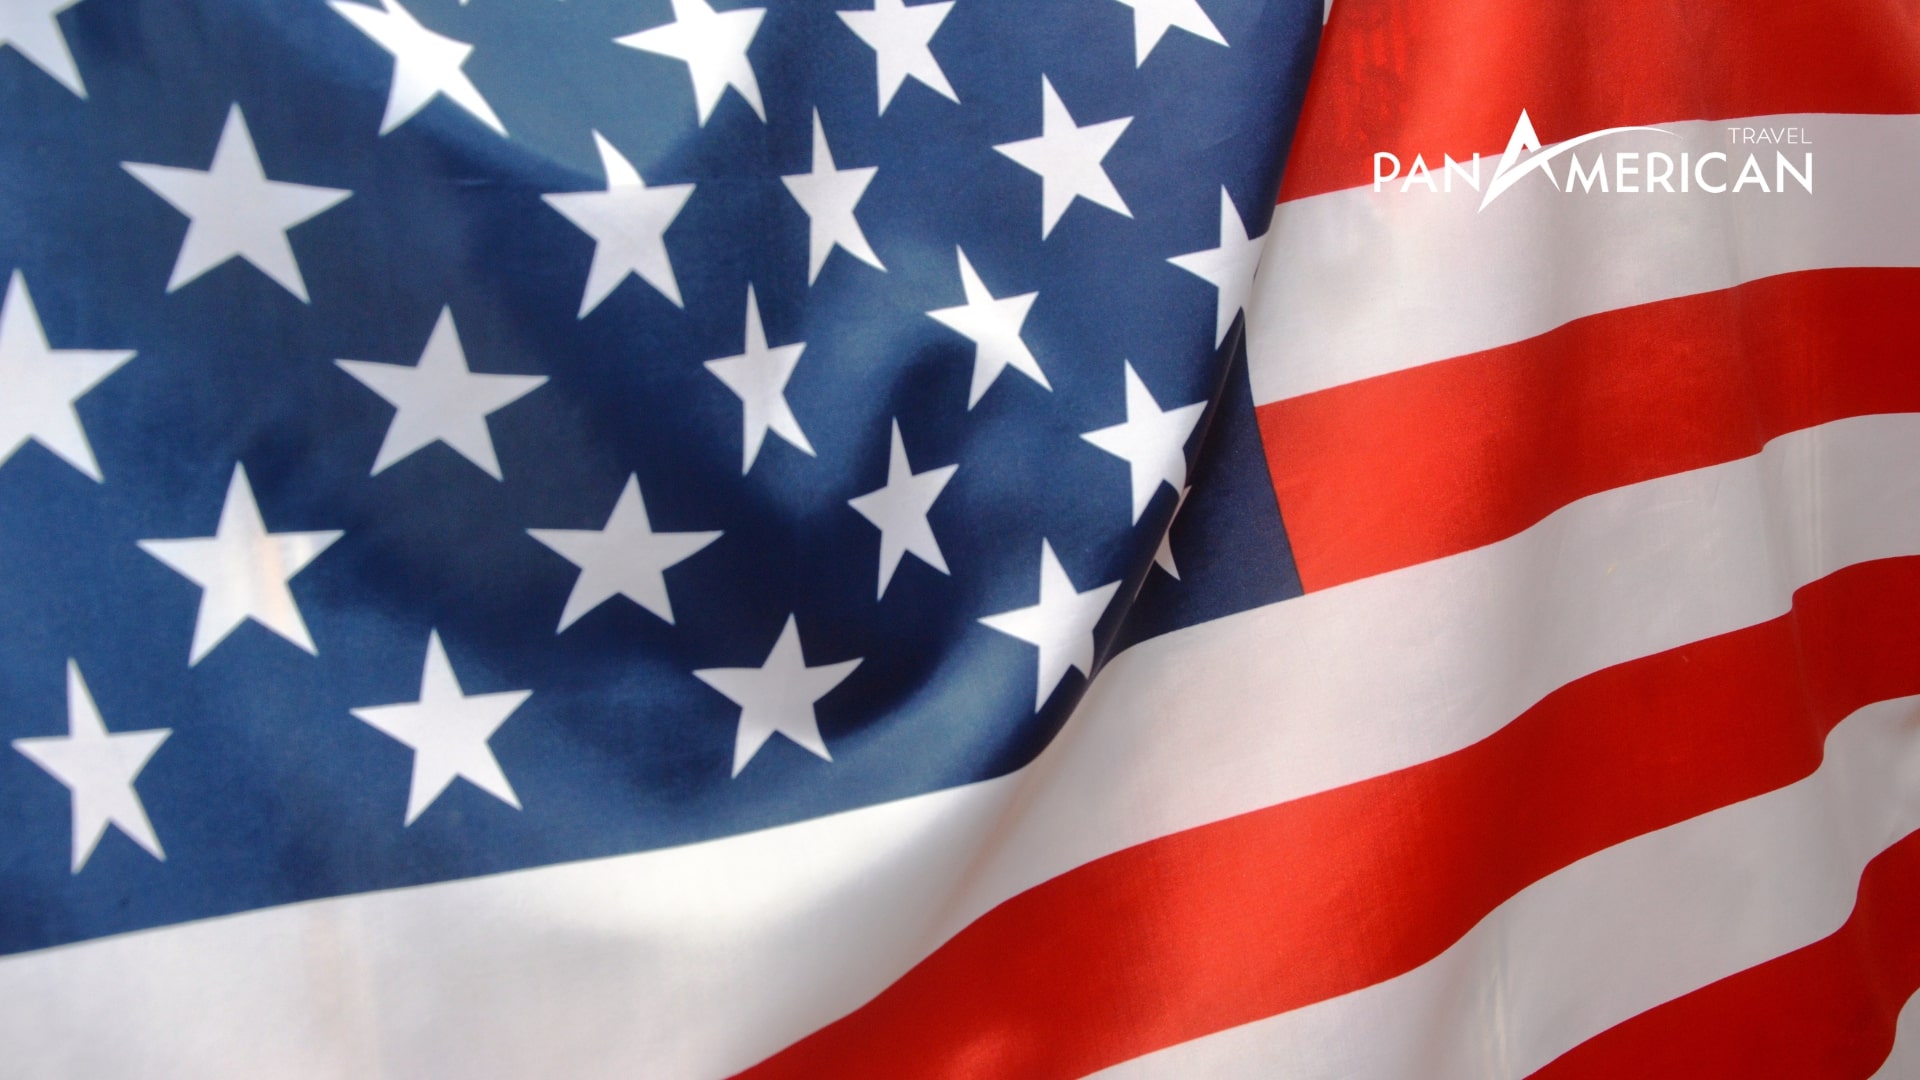 Lá quốc kỳ Hợp chủng quốc Hoa Kỳ với chân thành và ý nghĩa của việc song lập, tự tại và lòng yêu thương nước